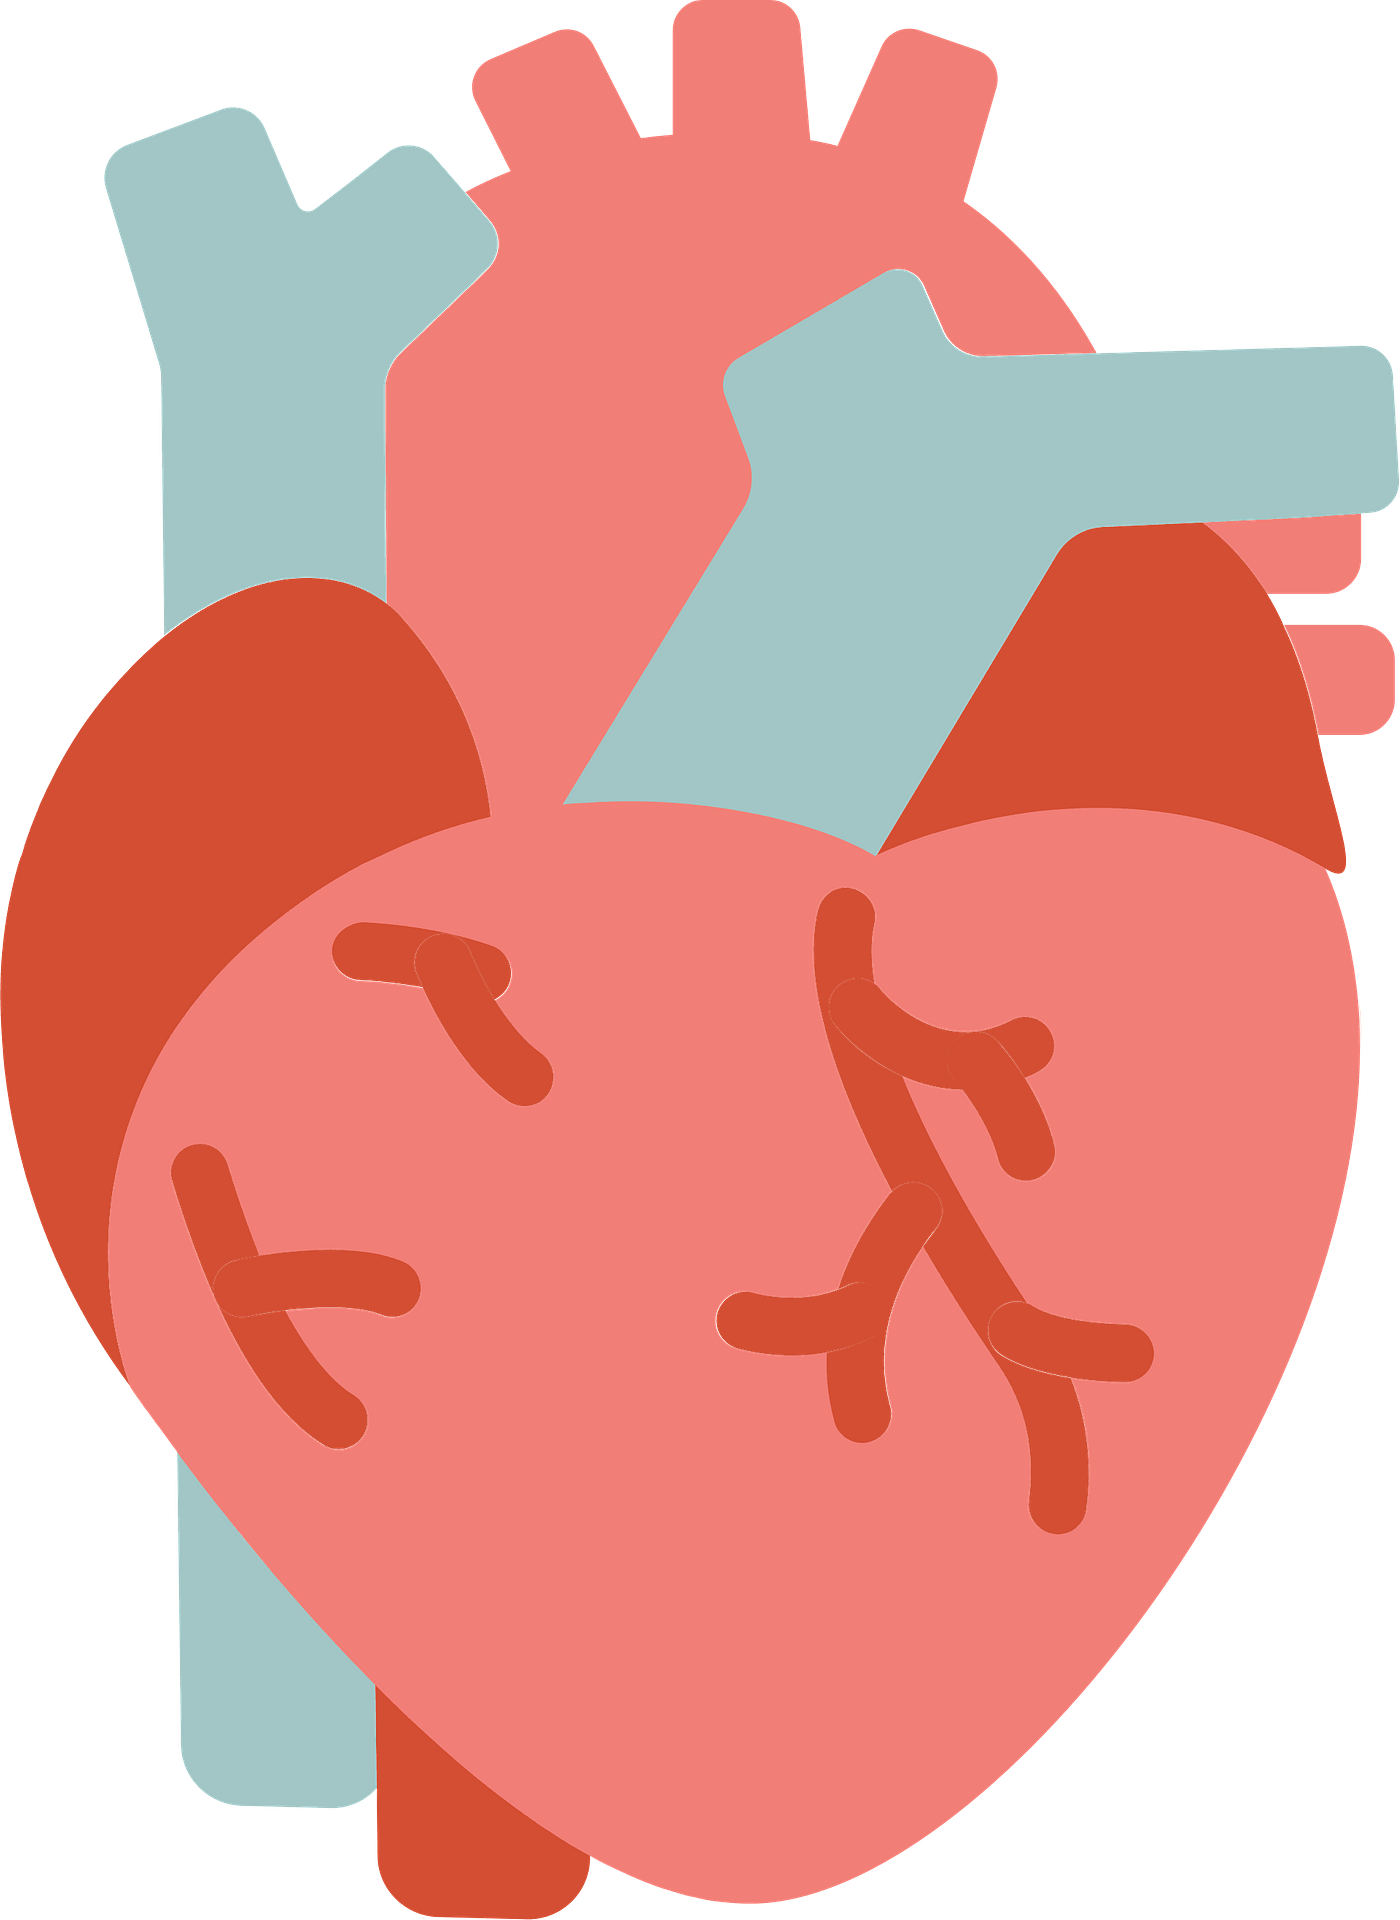 Vetor coração humano PNG imagem